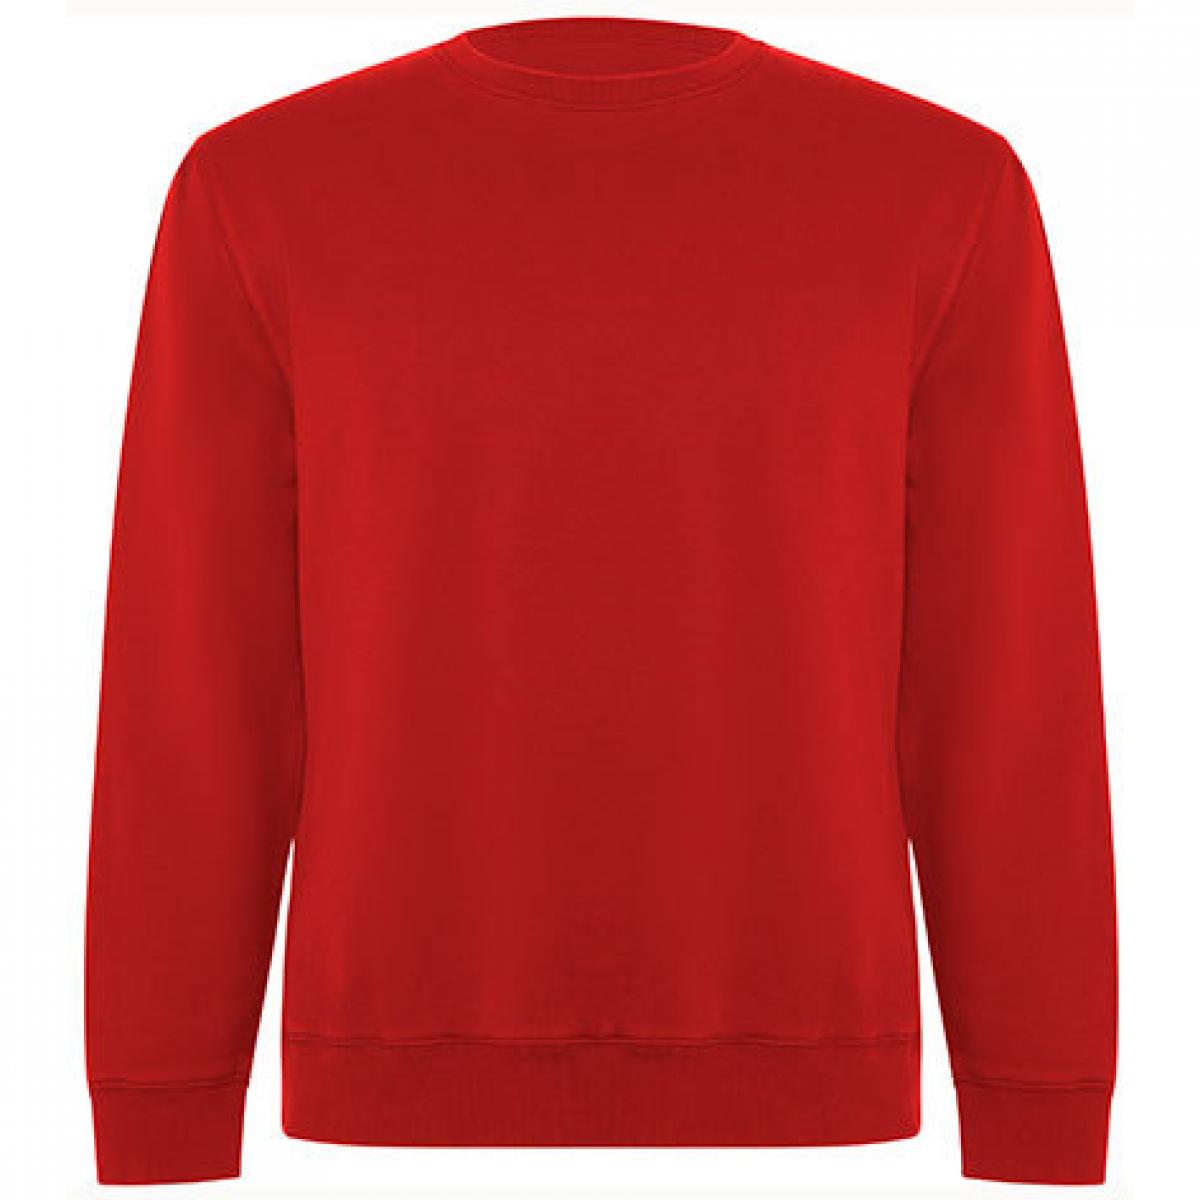 Hersteller: Roly Eco Herstellernummer: SU1071 Artikelbezeichnung: Batian Organic Sweatshirt - Unisex Farbe: Red 60